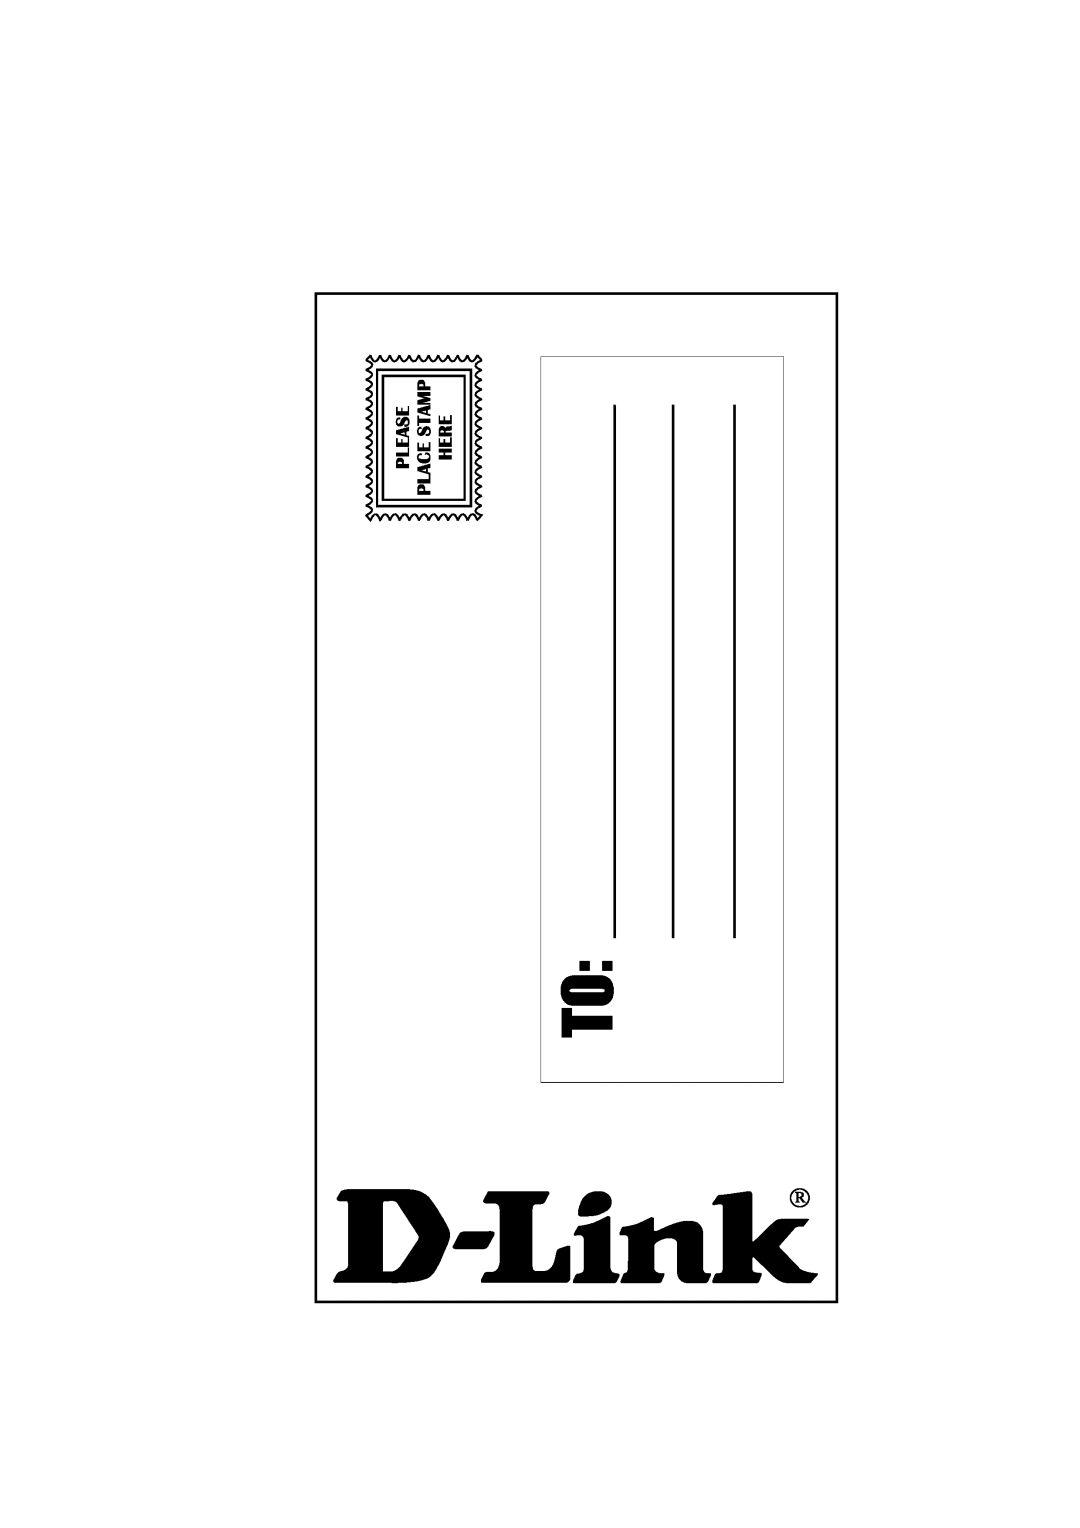 D-Link DSL-1500G manual 